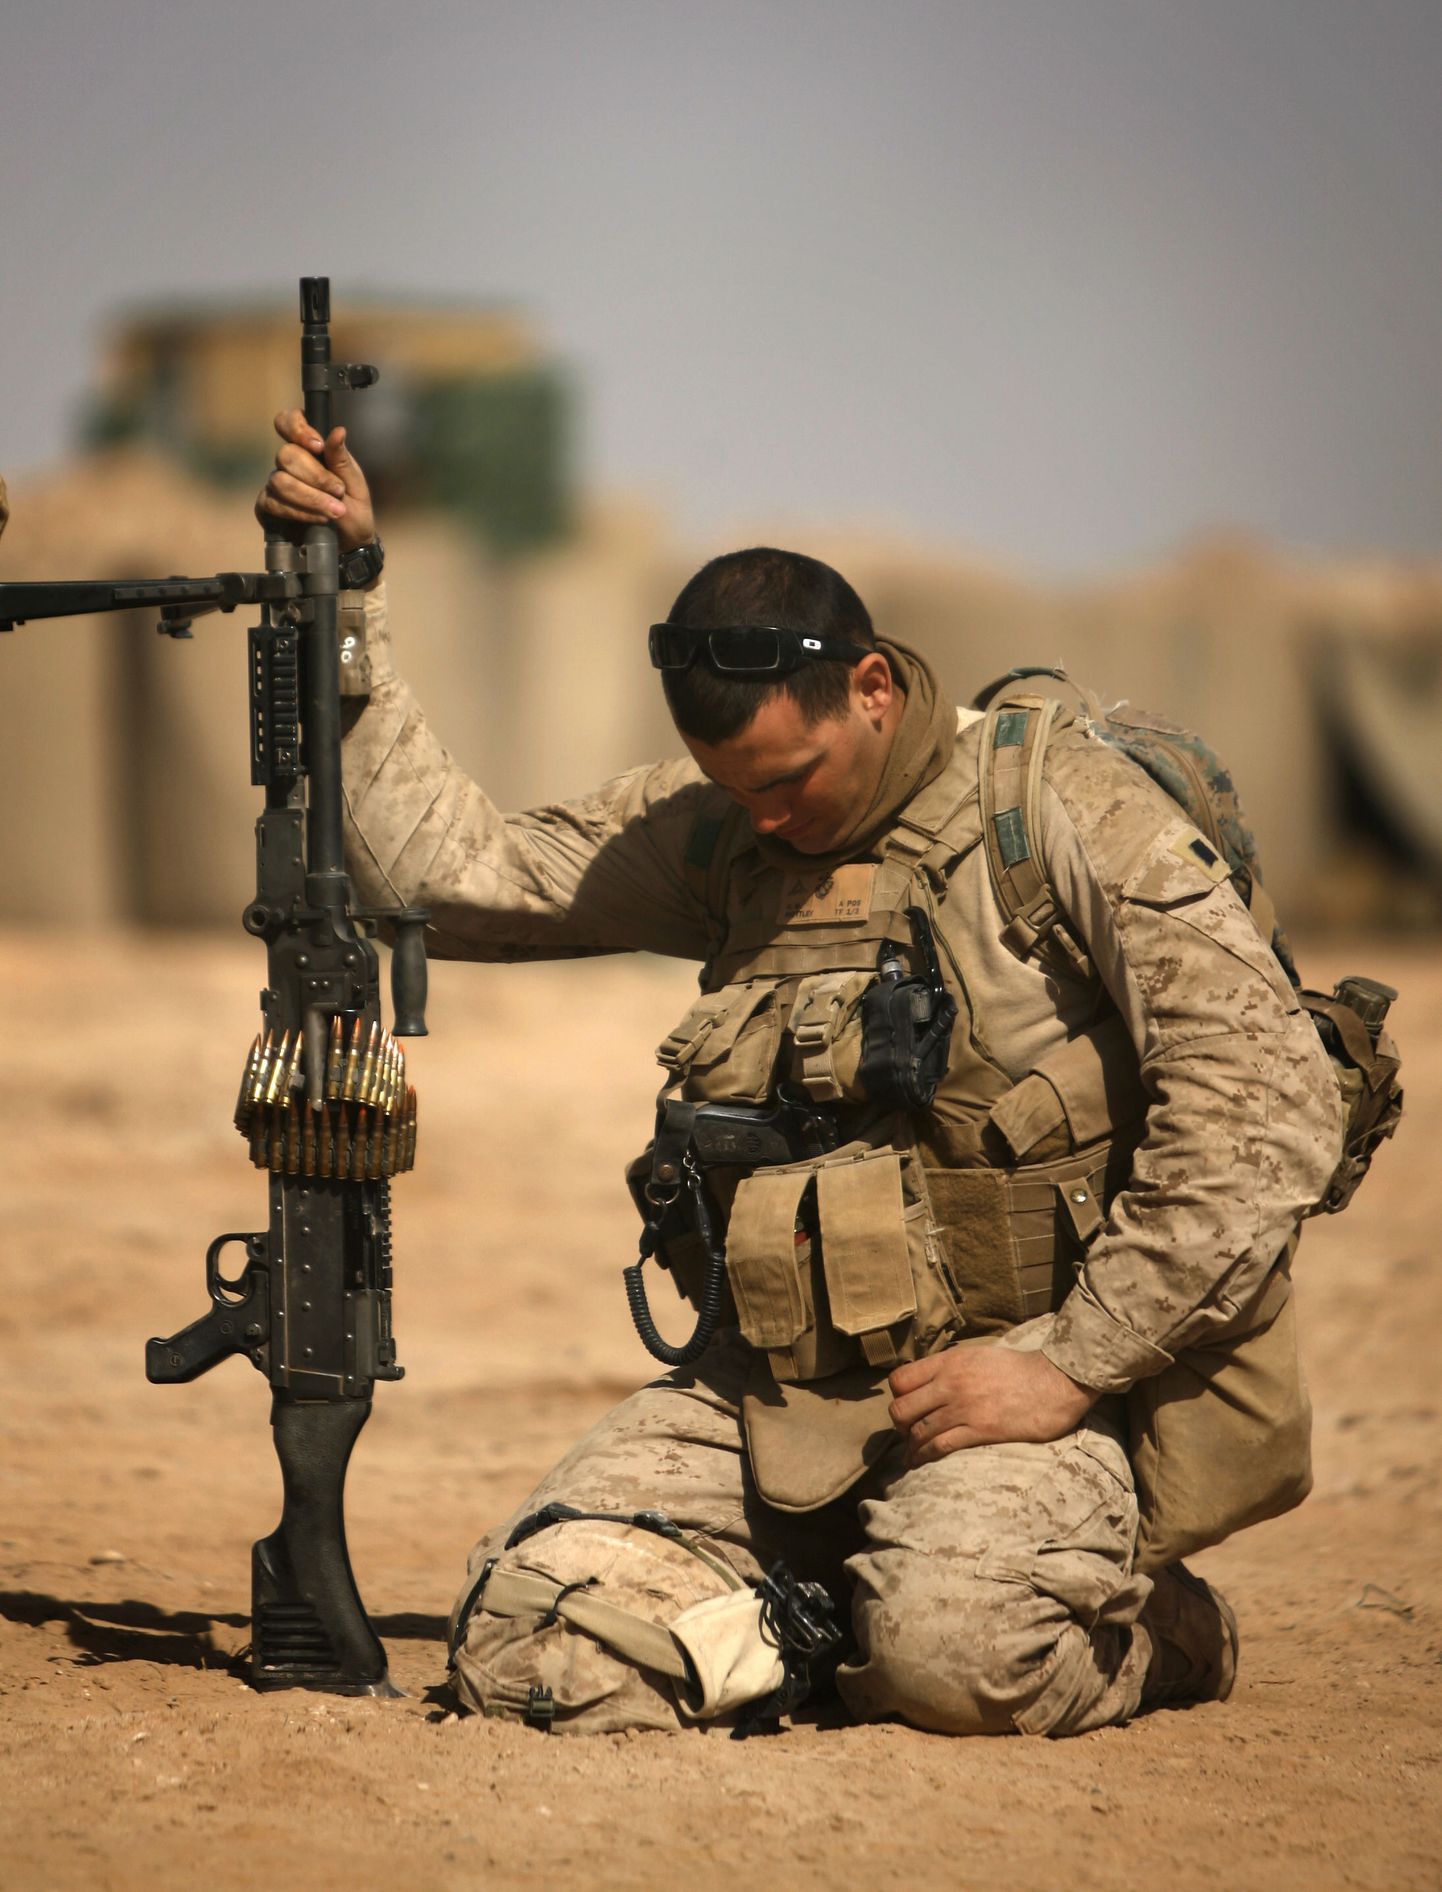 Ameerika sõdur. Pilt on illustratiivne.